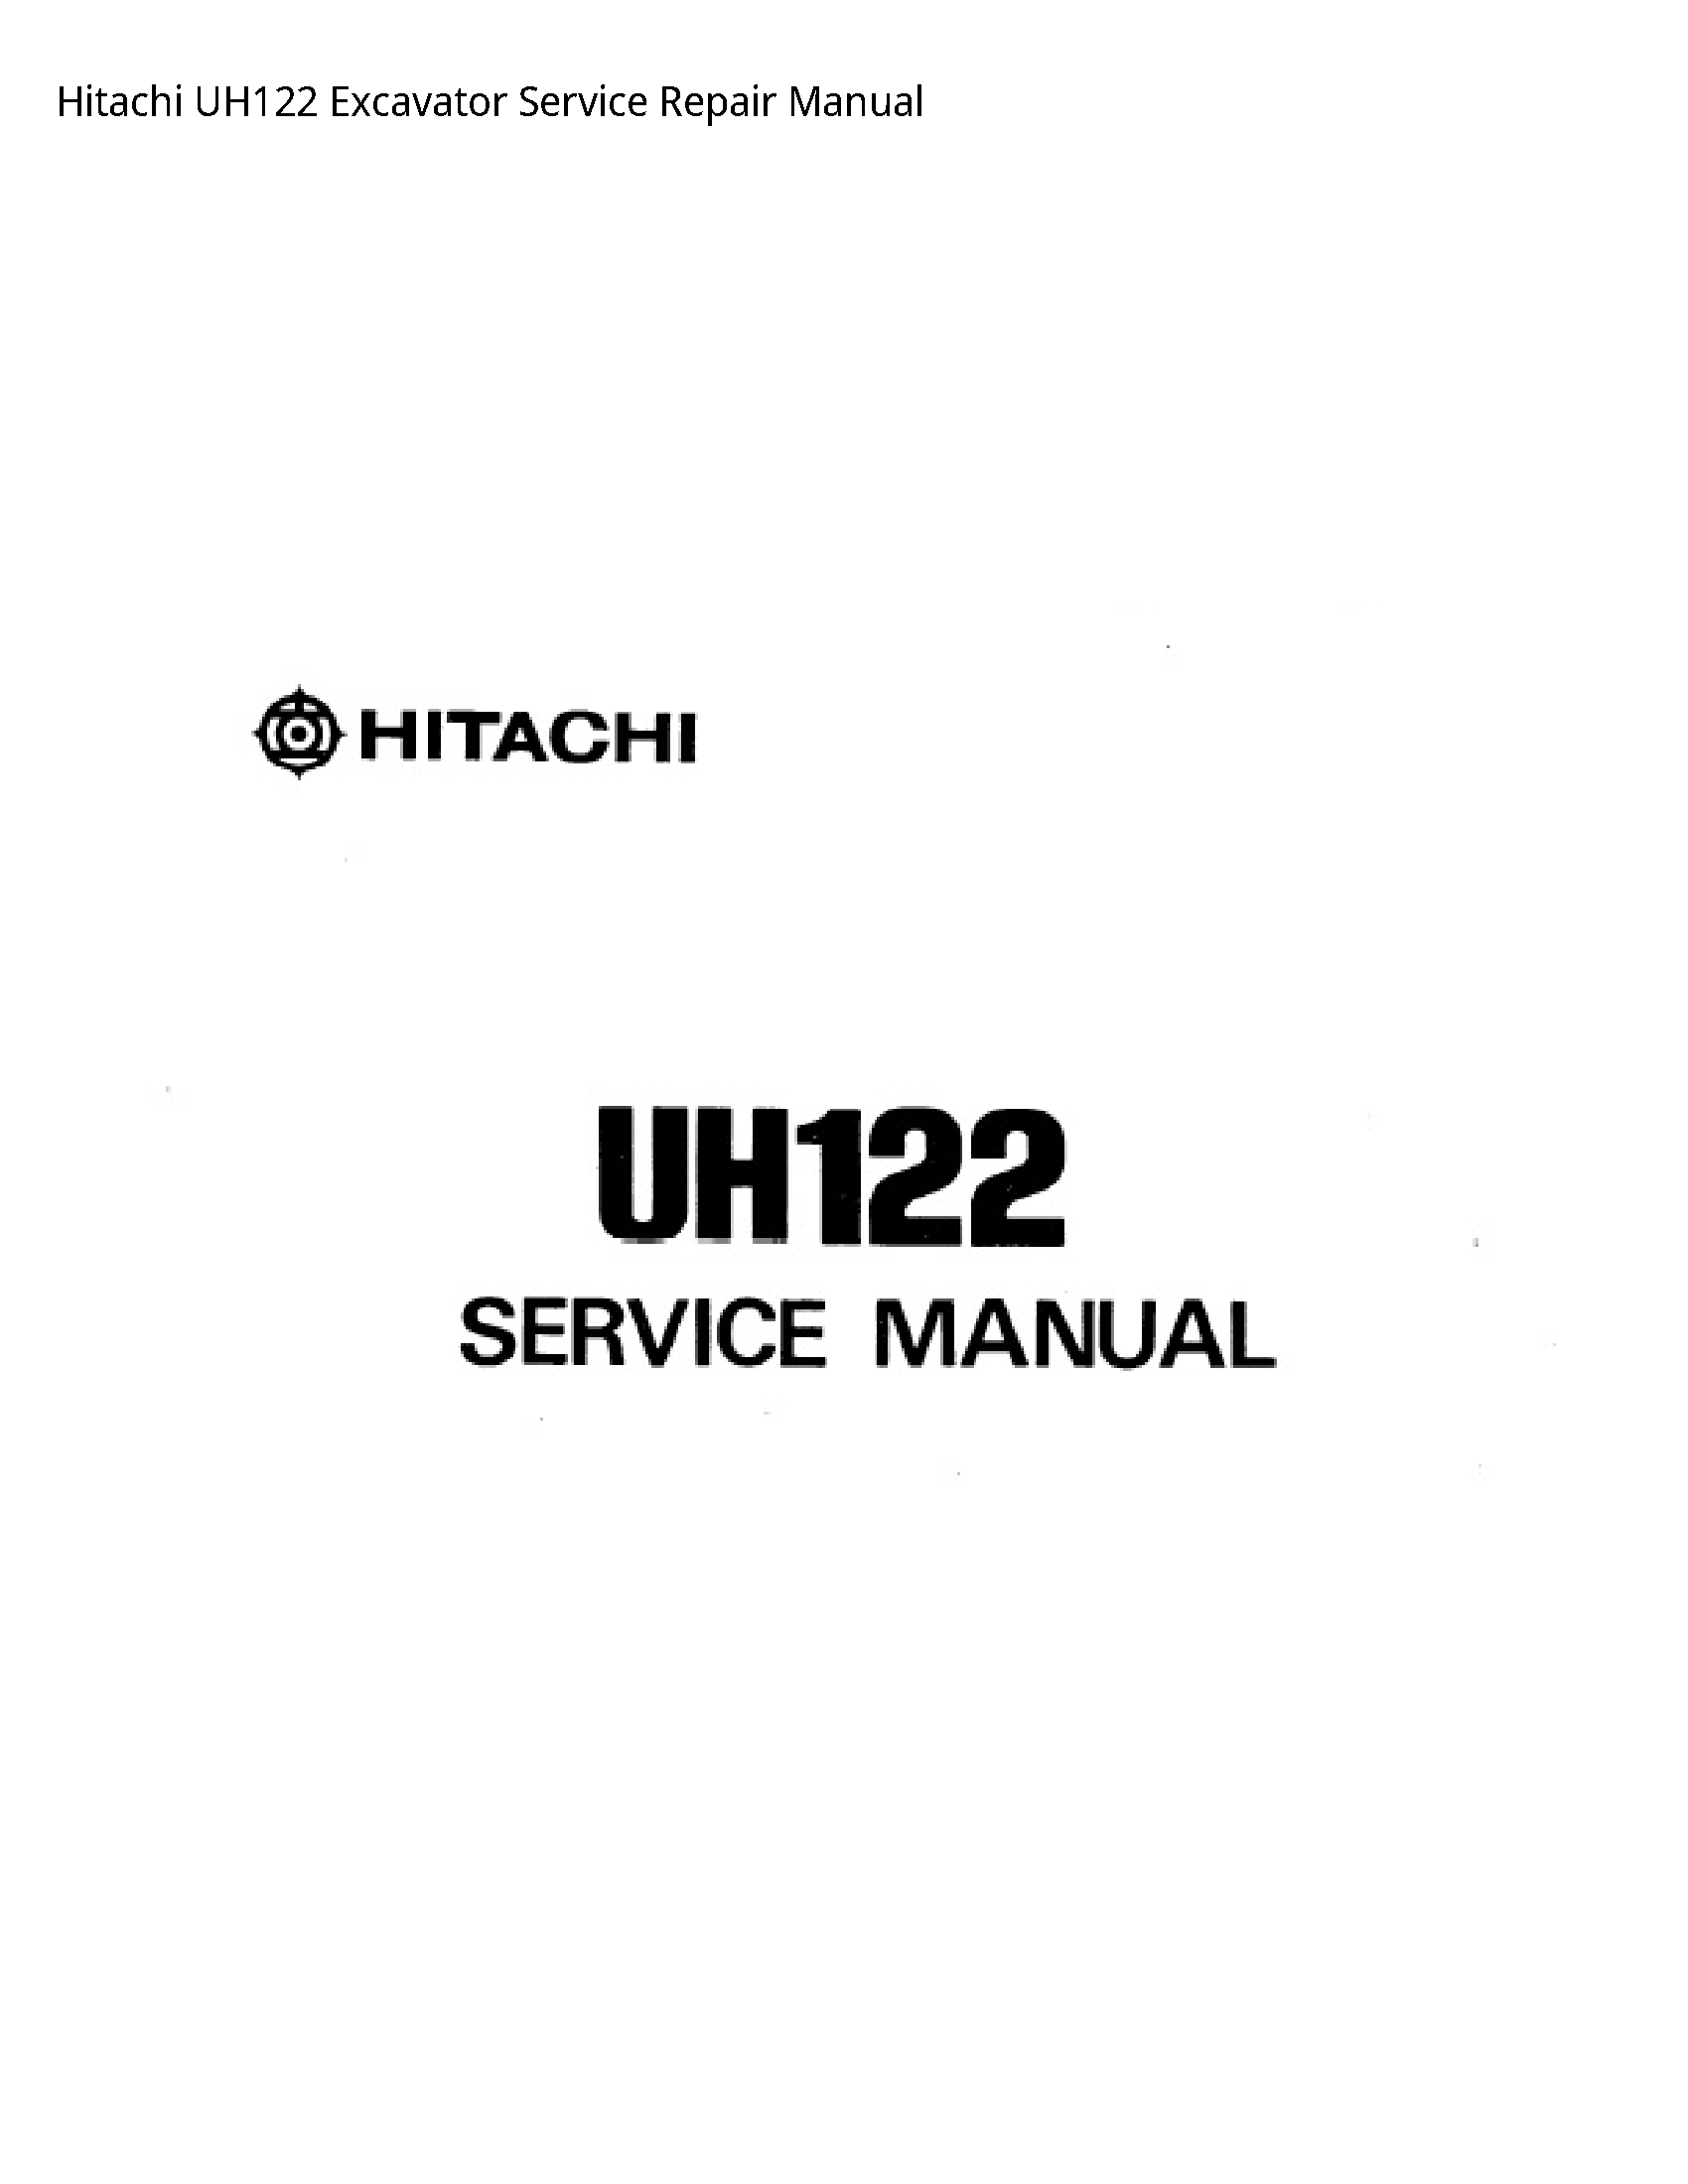 Hitachi UH122 Excavator manual